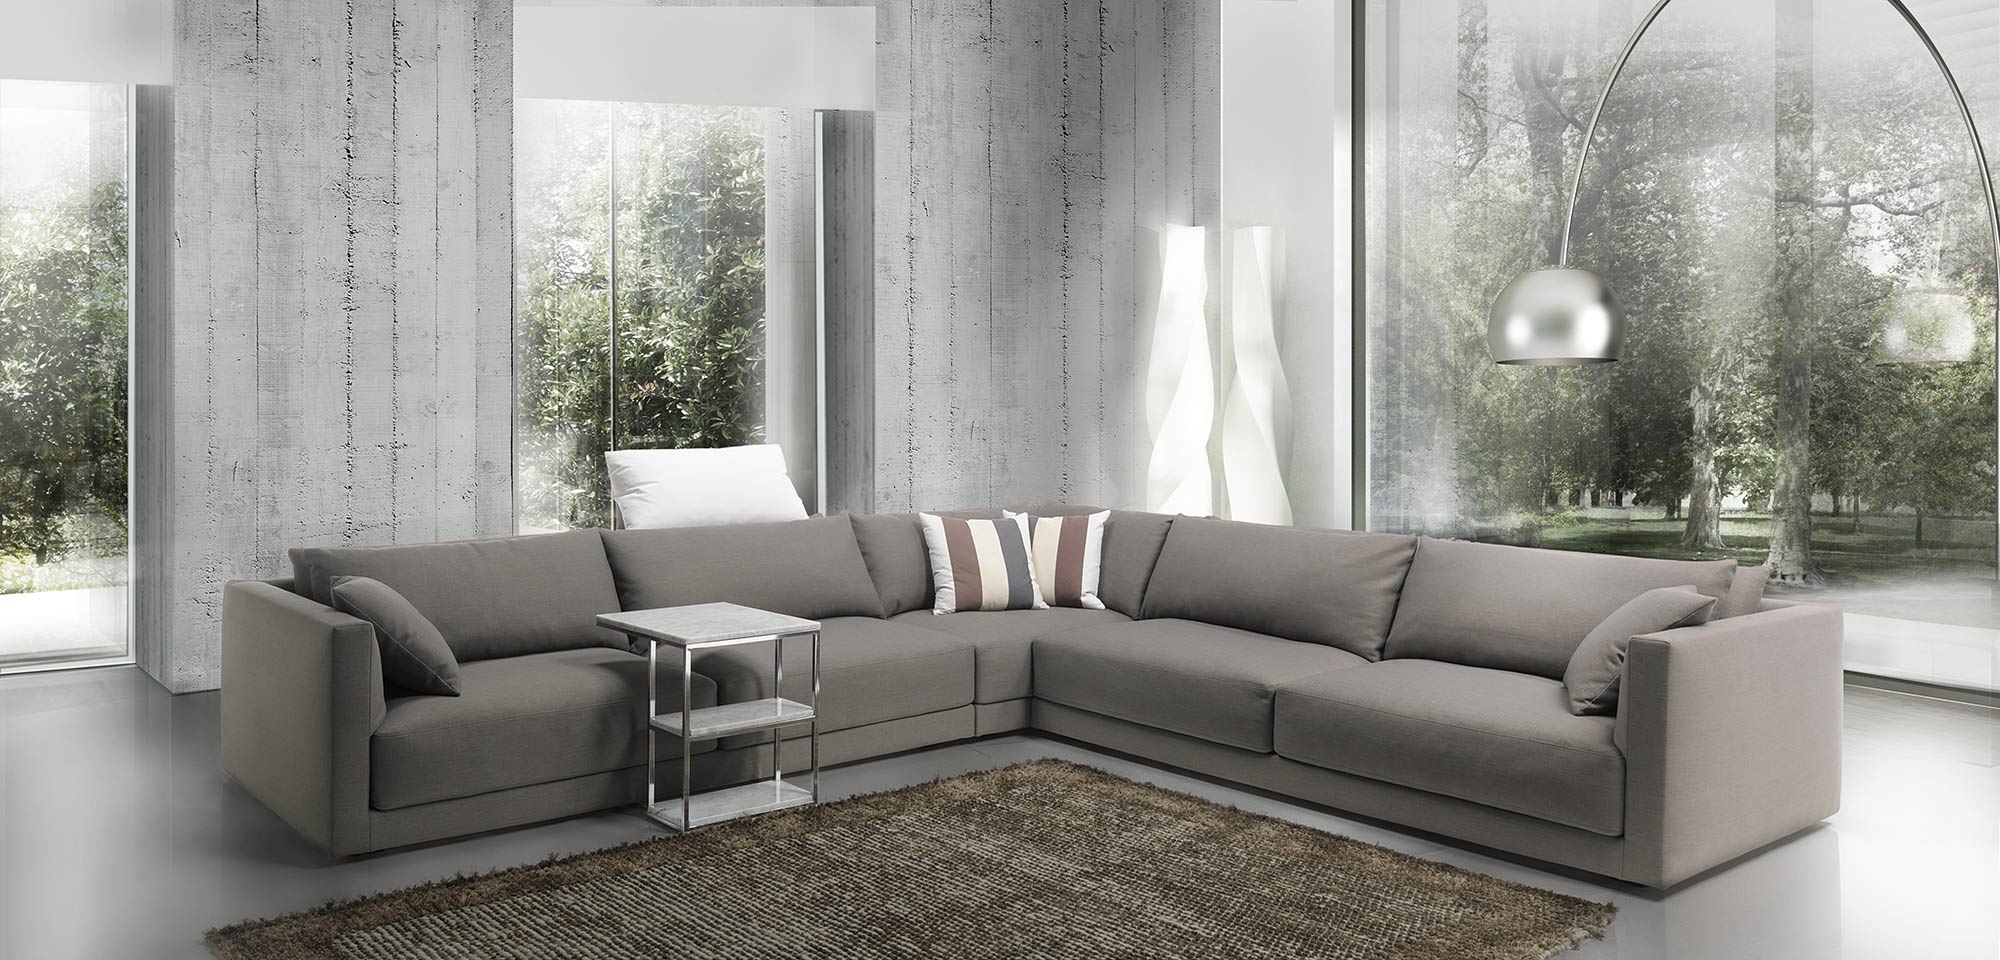 produzione poltrone In Brianza divano moderno alessia